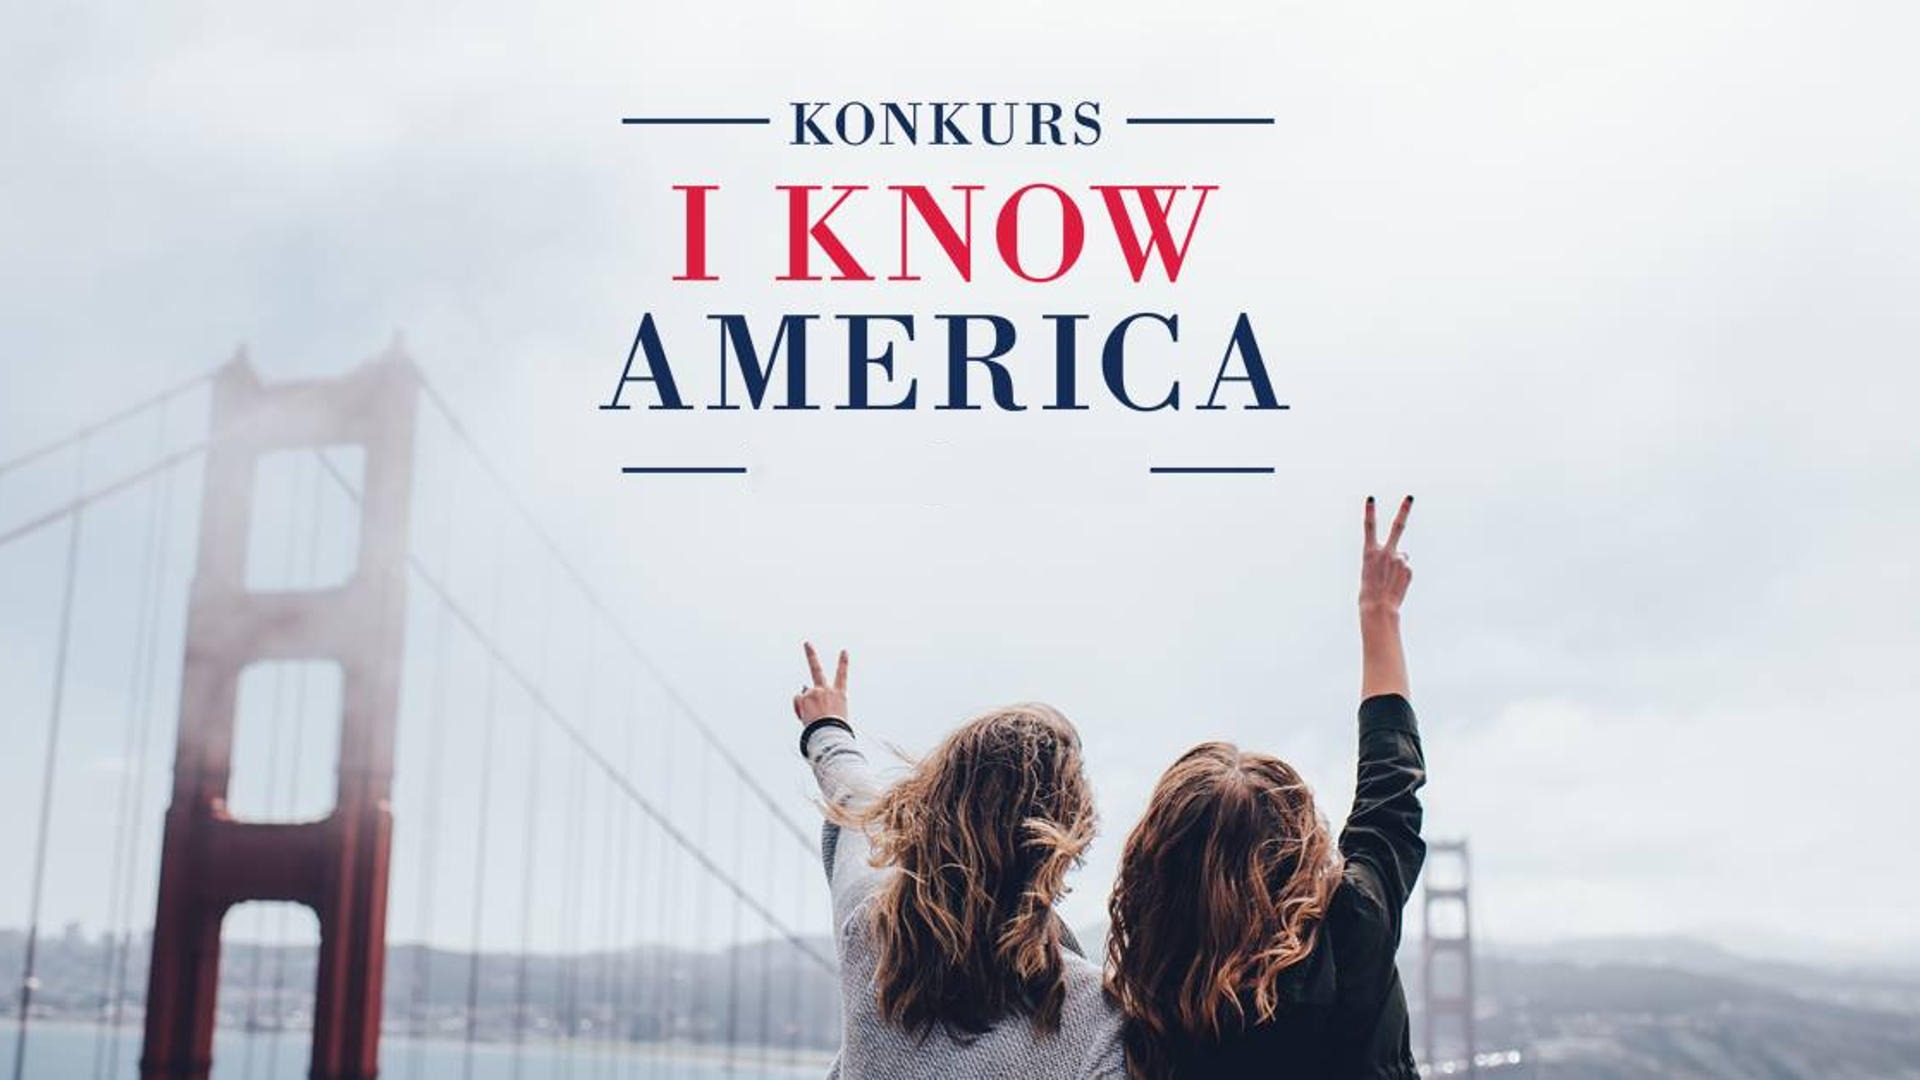 I KNOW AMERICA - konkurs wiedzy o Ameryce - Obrazek 1